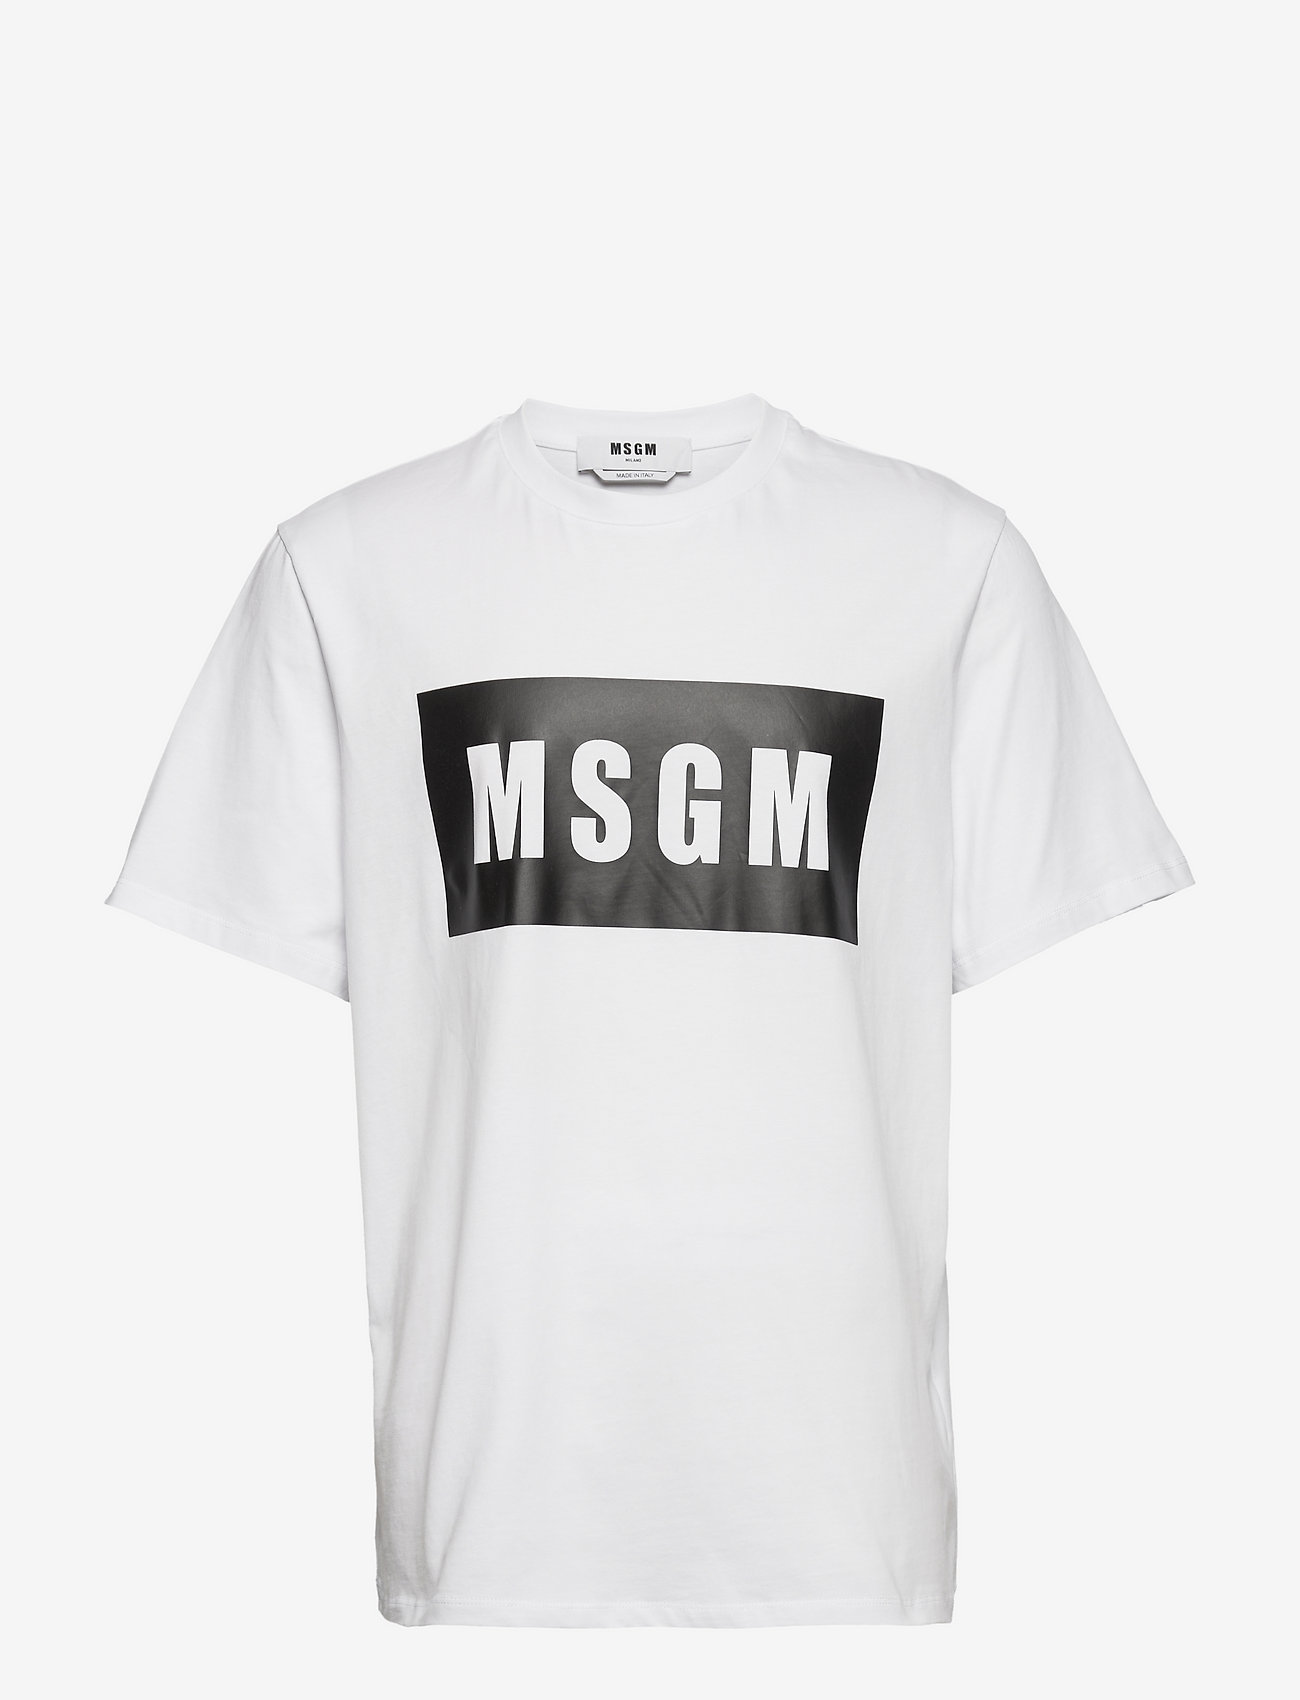 MSGM - T-SHIRT - white - 0